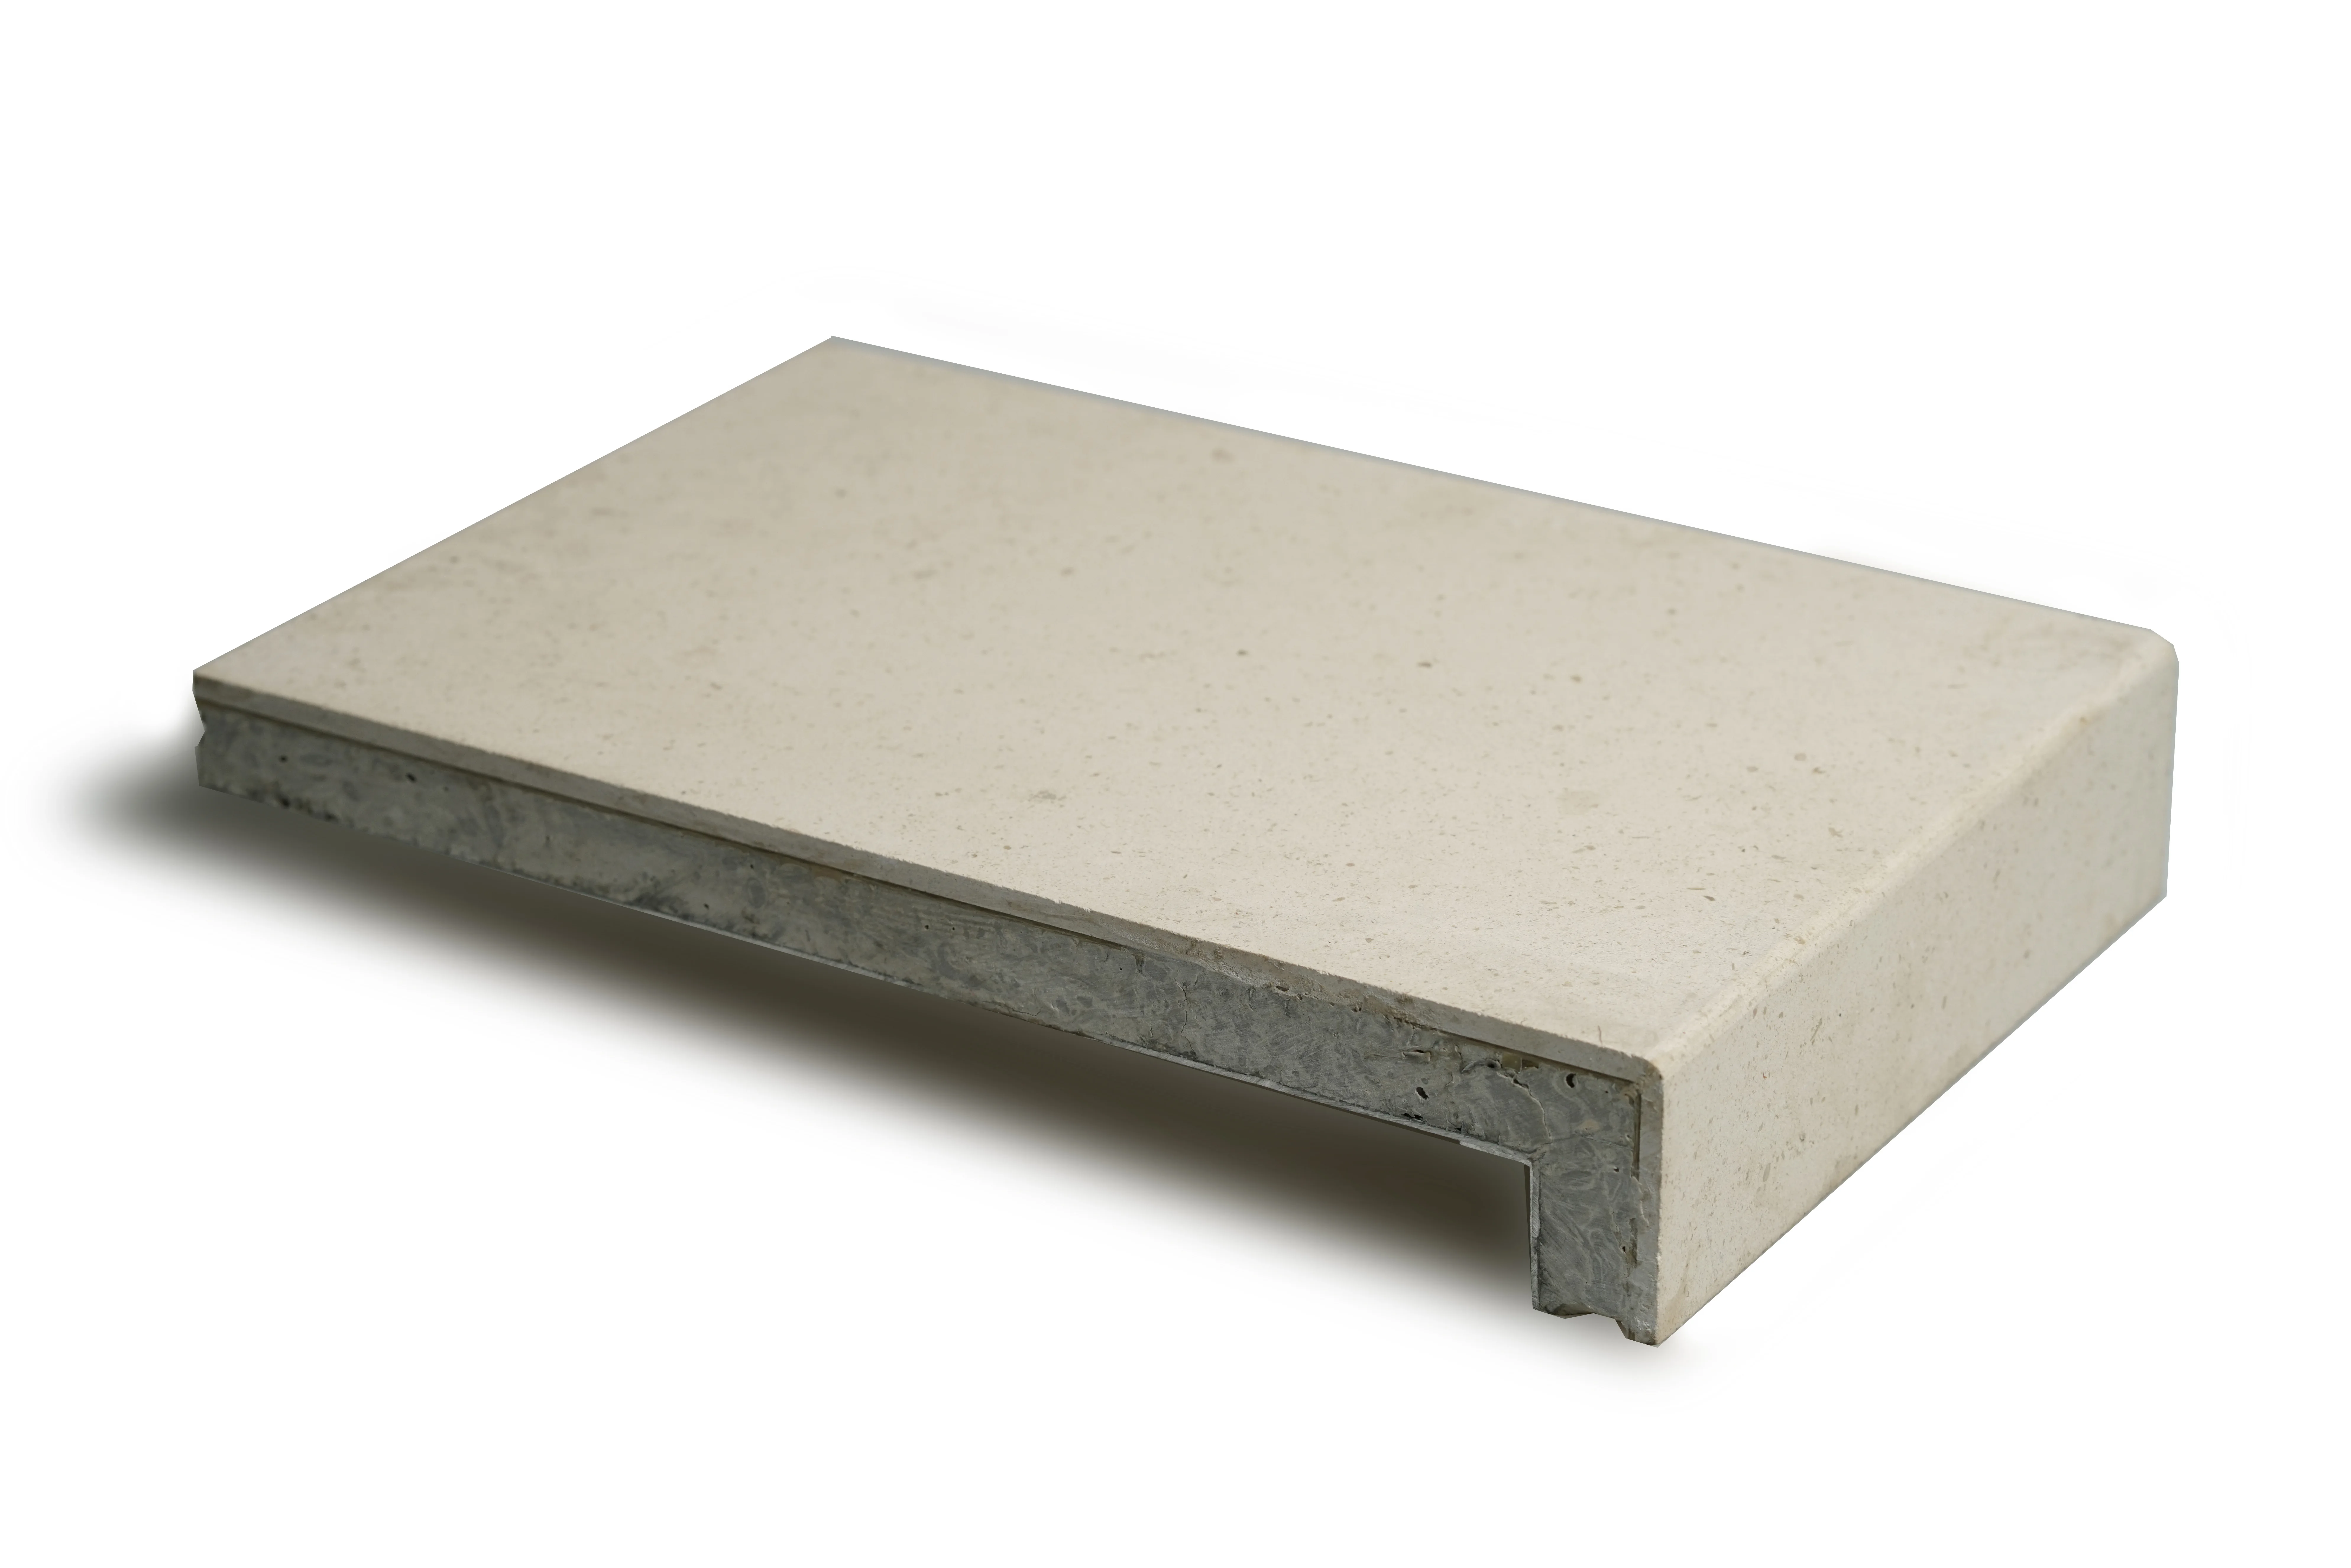 
Профессиональные индивидуальные каменные мраморные алюминиевые сотовые композитные панели для наружной/внутренней облицовки стен 